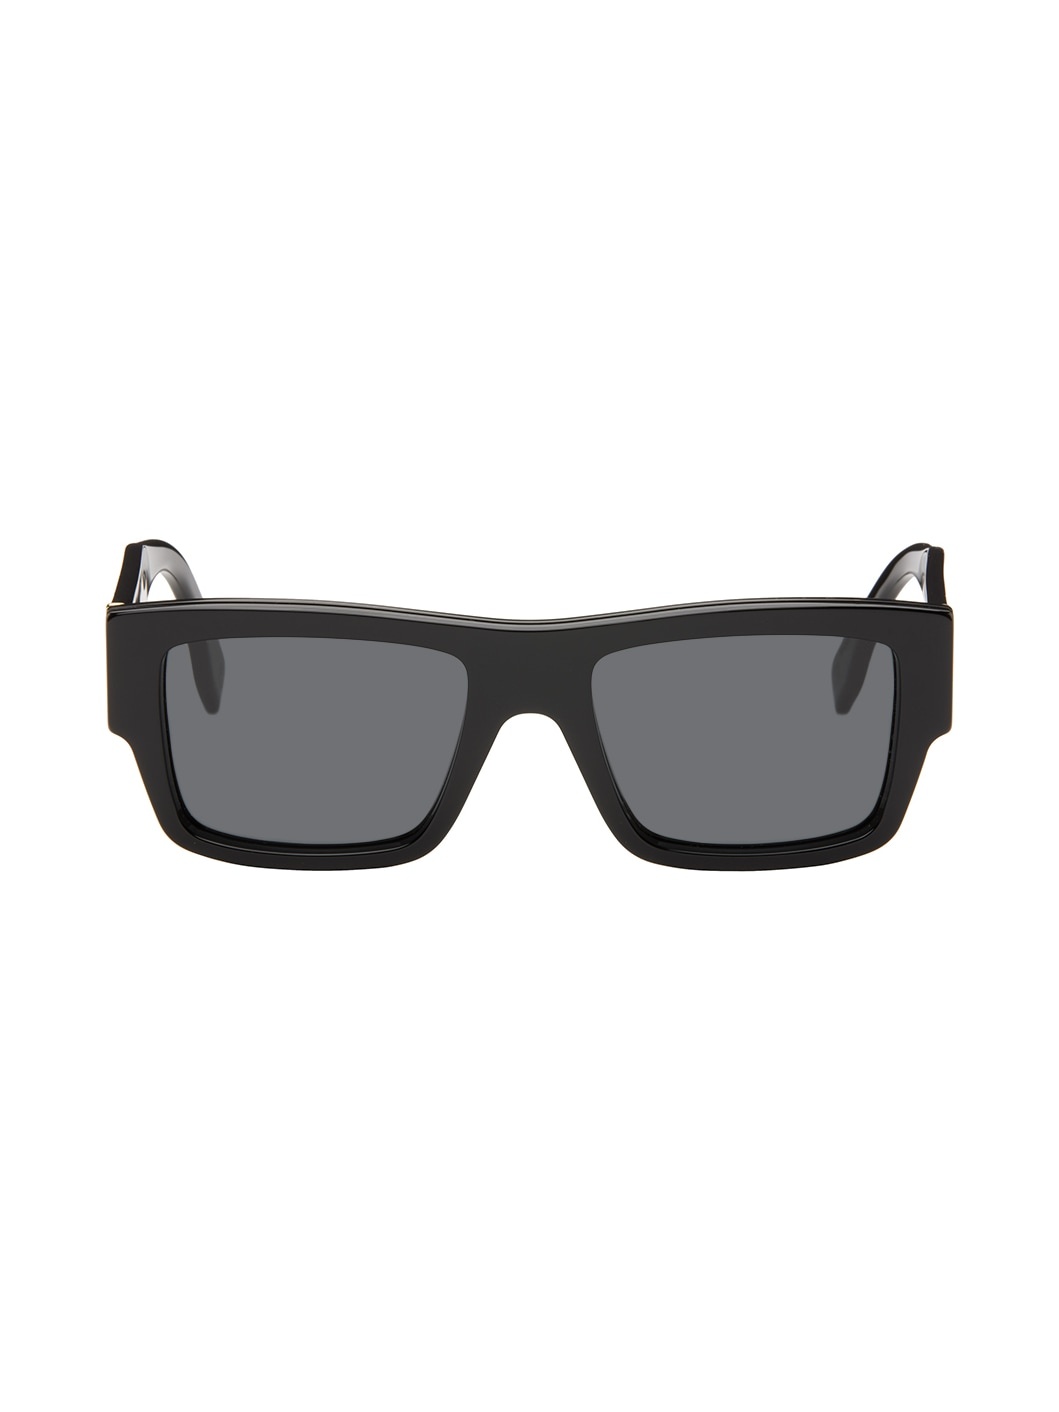 Black Signature Sunglasses - 1